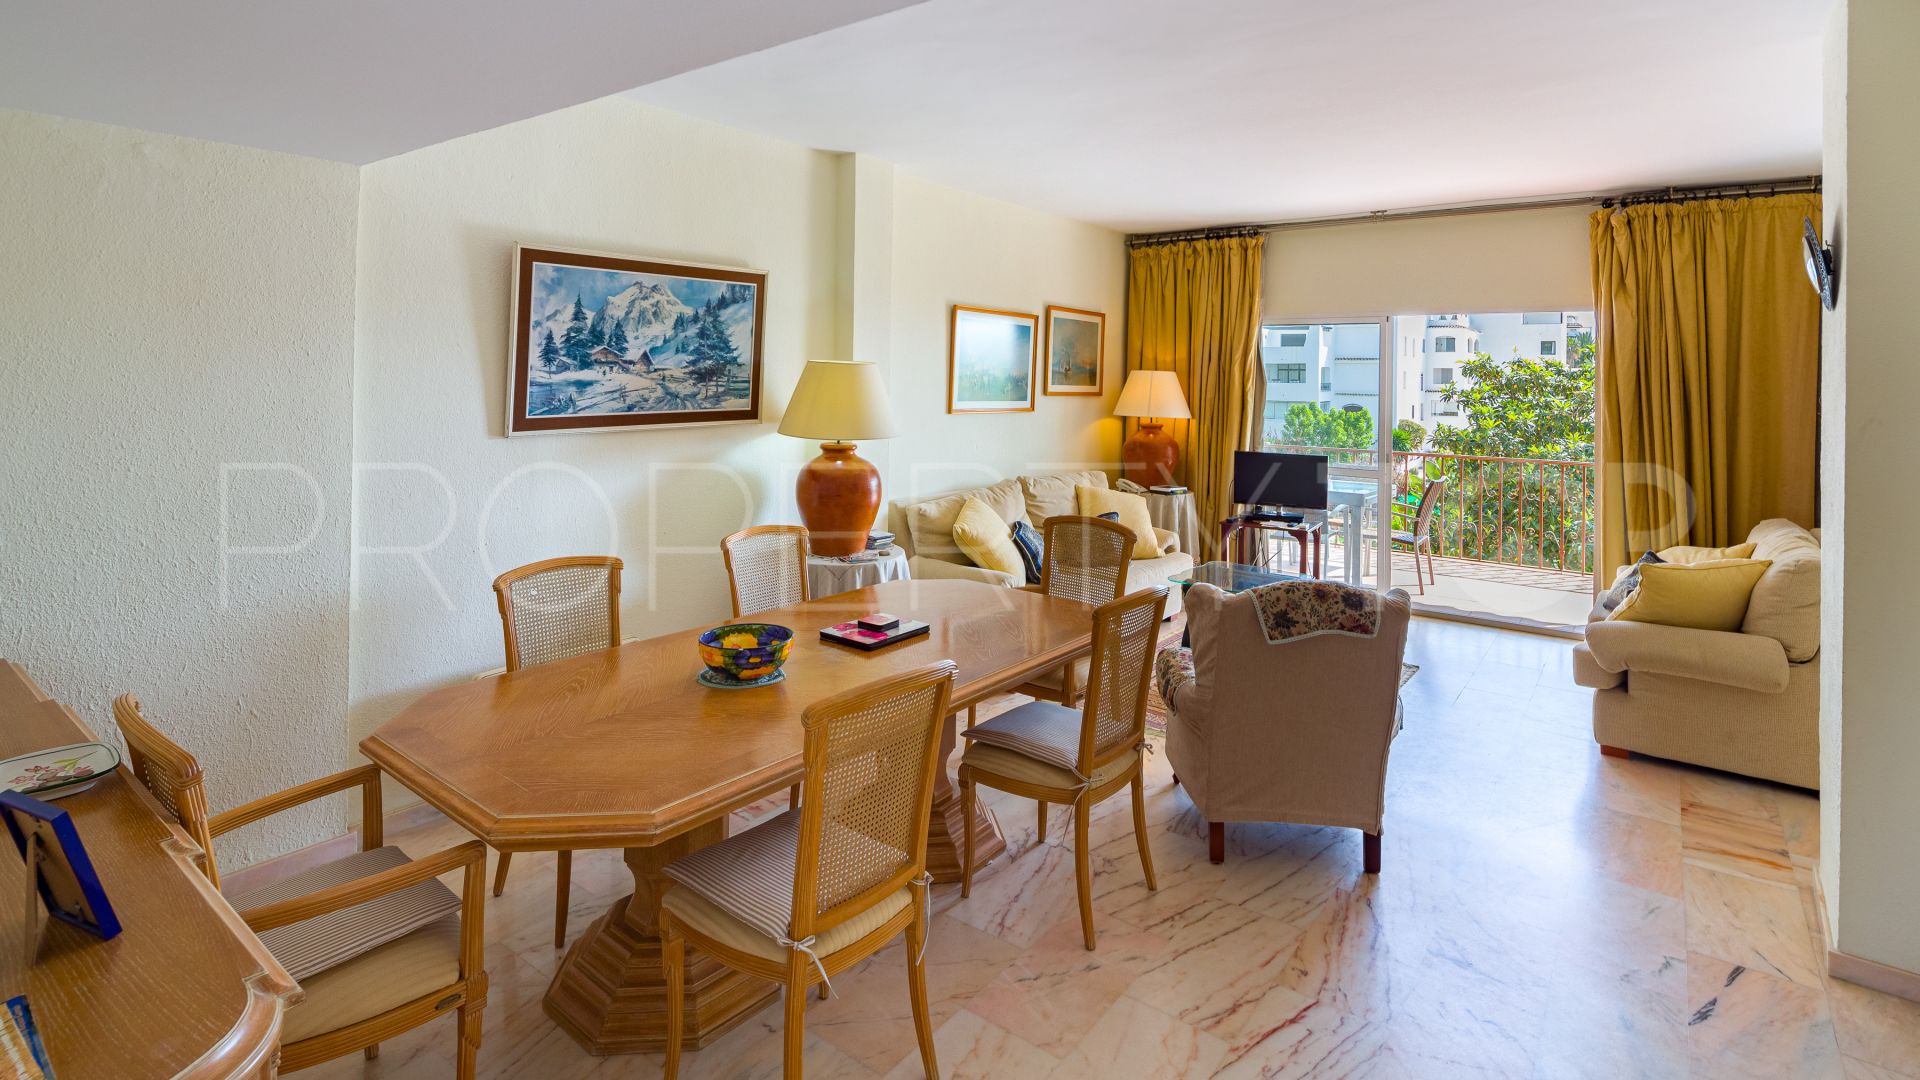 Comprar apartamento en Andalucia del Mar